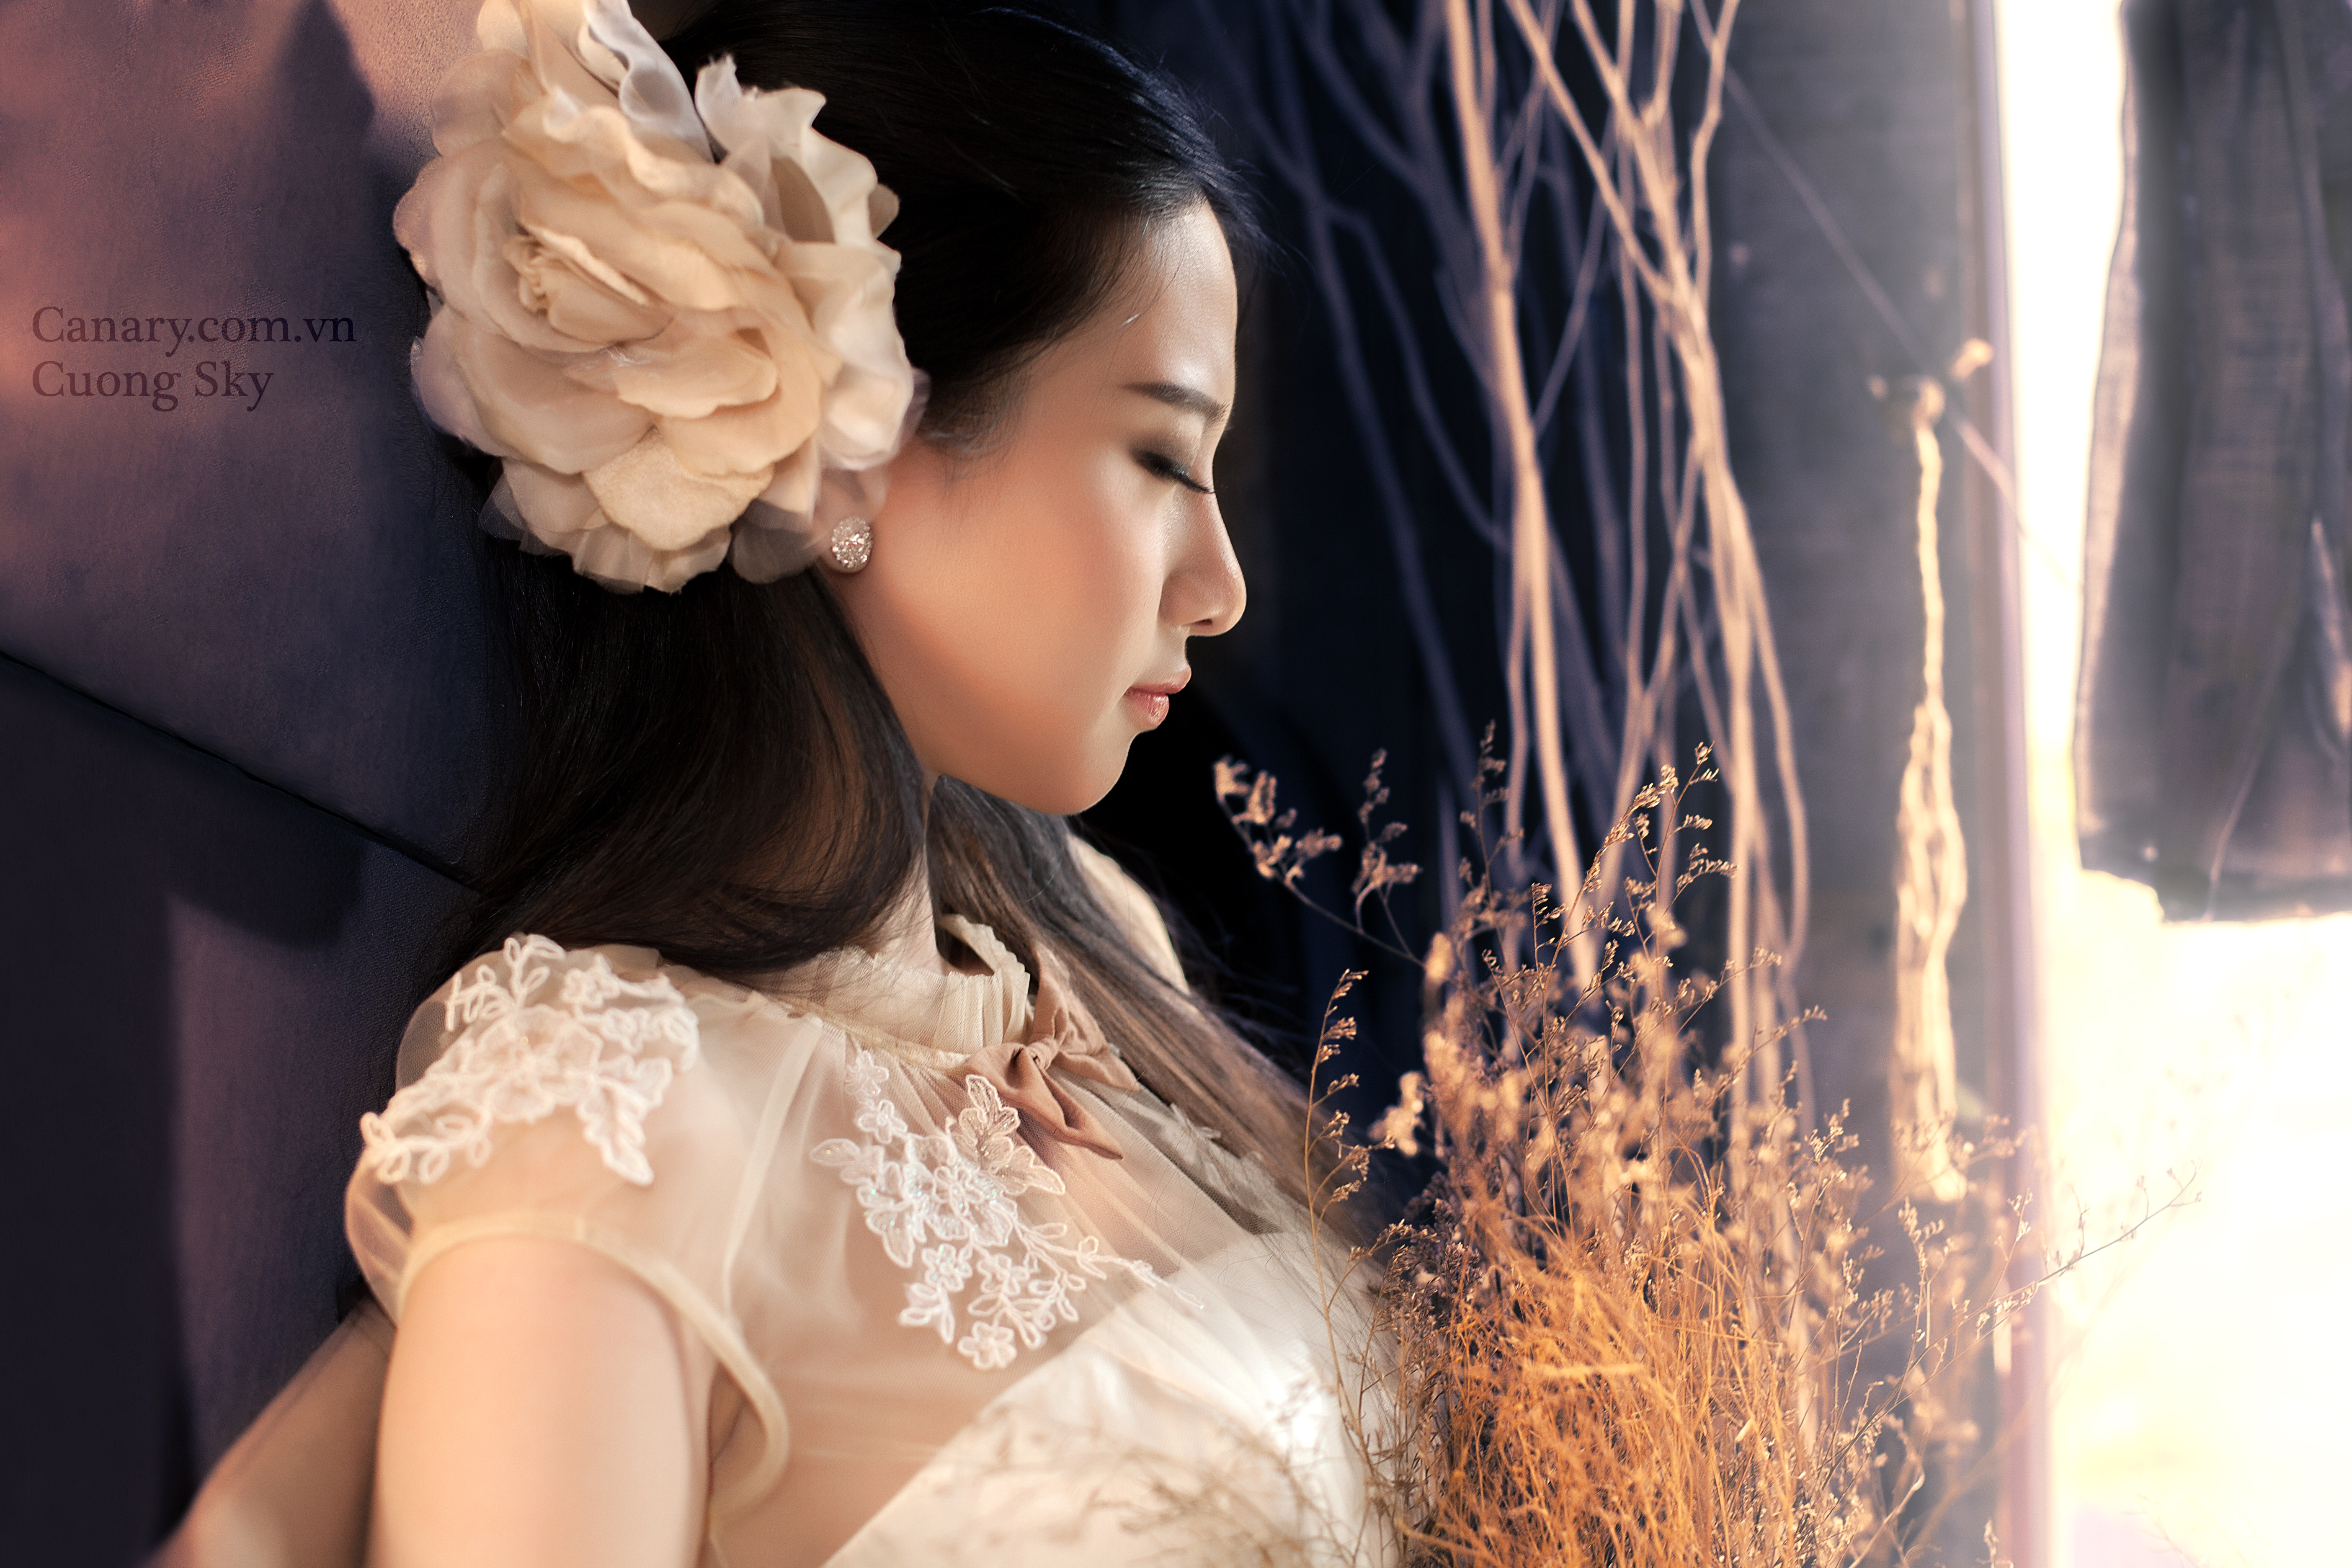 Asian Bride Girl Mitu Kat Model Vietnamese 5616x3744